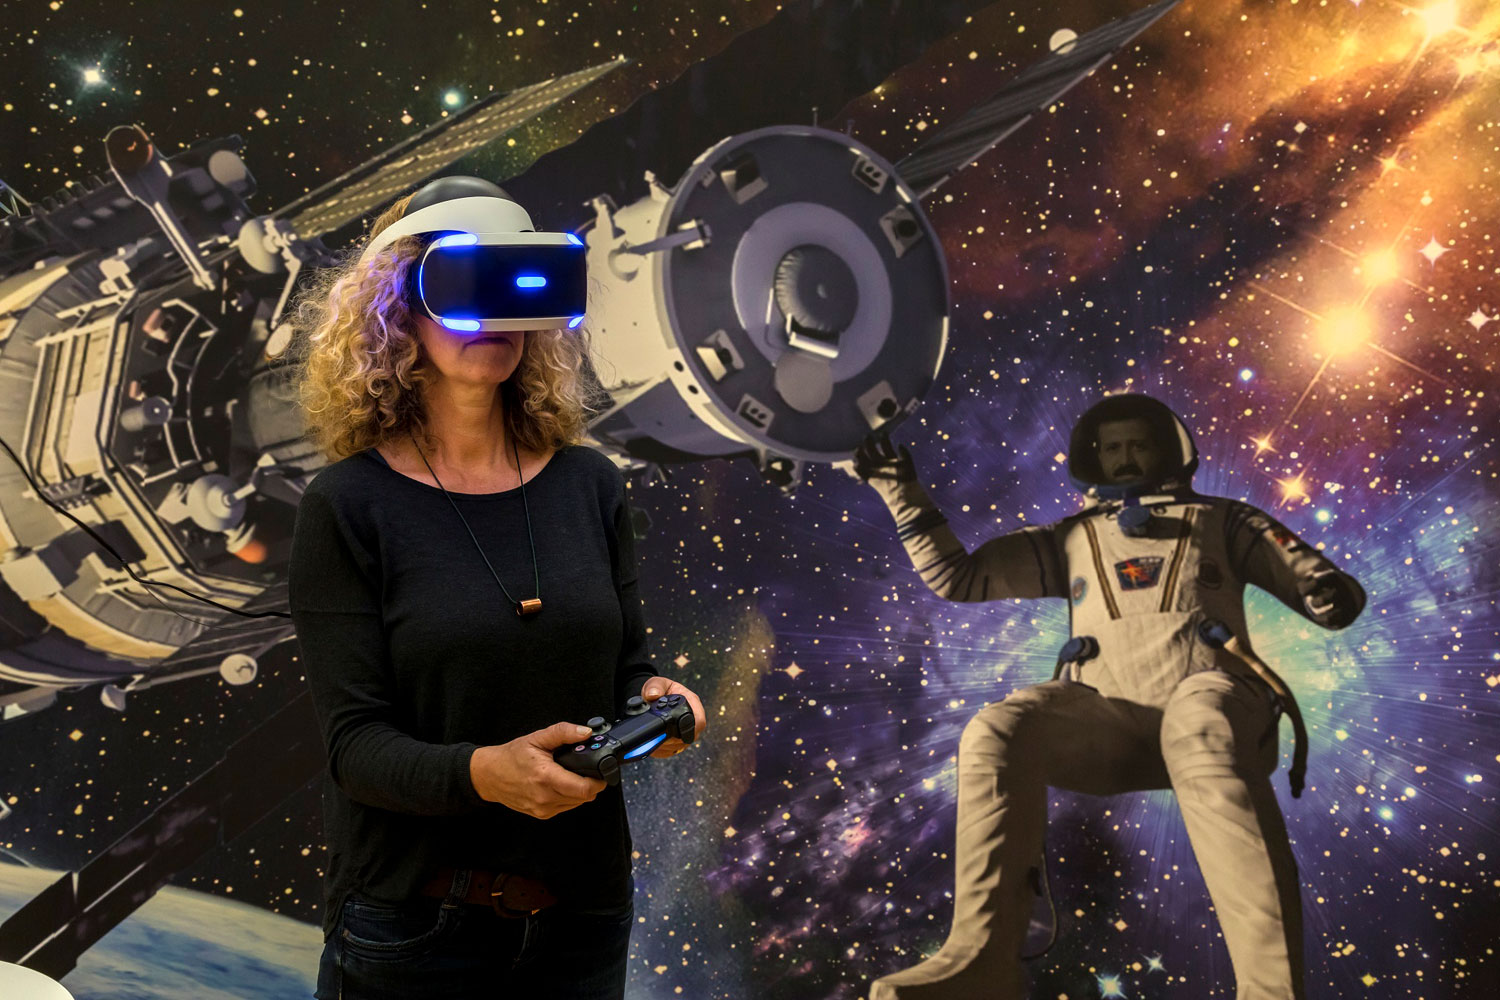 Im Hintergrund ist ein großes Bild aus dem Weltall zu sehen mit Sternen und Kometen darauf.. Links ist eine Raumkapsel und rechts daneben ein schwebender Astronaut in einem Raumanzug. Vor der Wand steht eine Frau, welche eine VR-Brille auf hat. In den Händen hält sie ein länglicher Spiele-Controller.